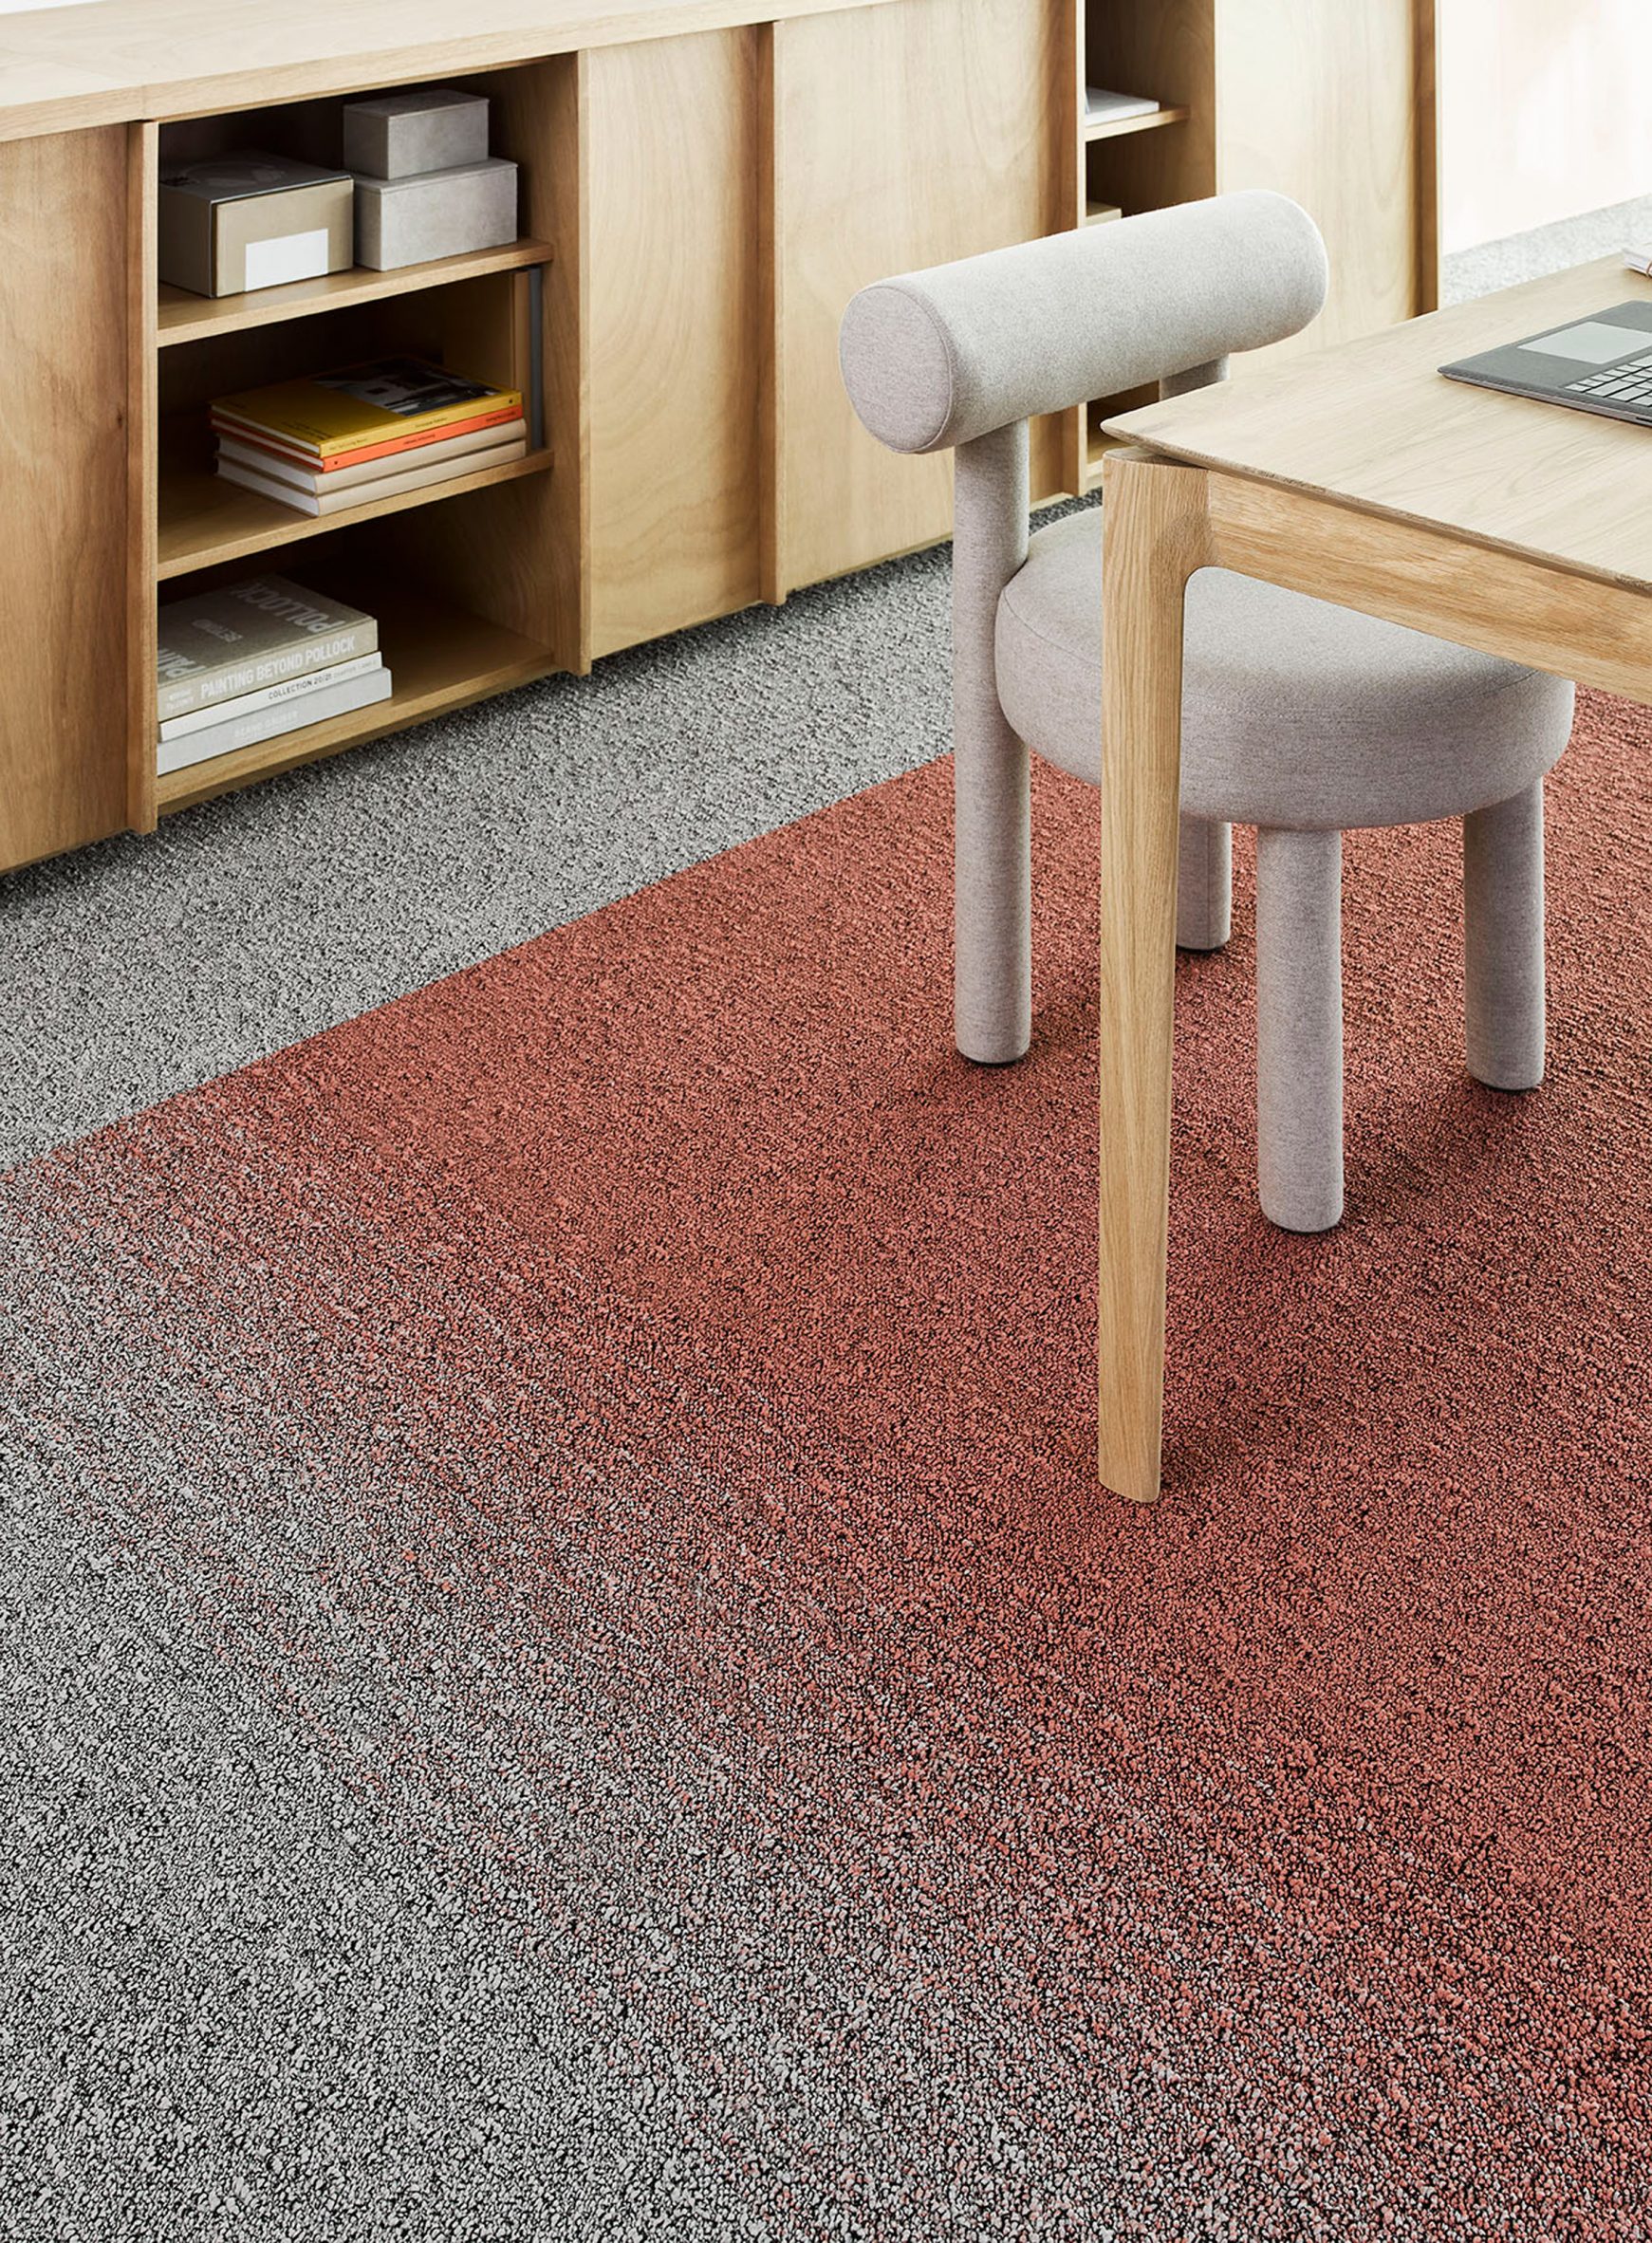 DESSO Fuse Landscape carpet tiles by Tarkett